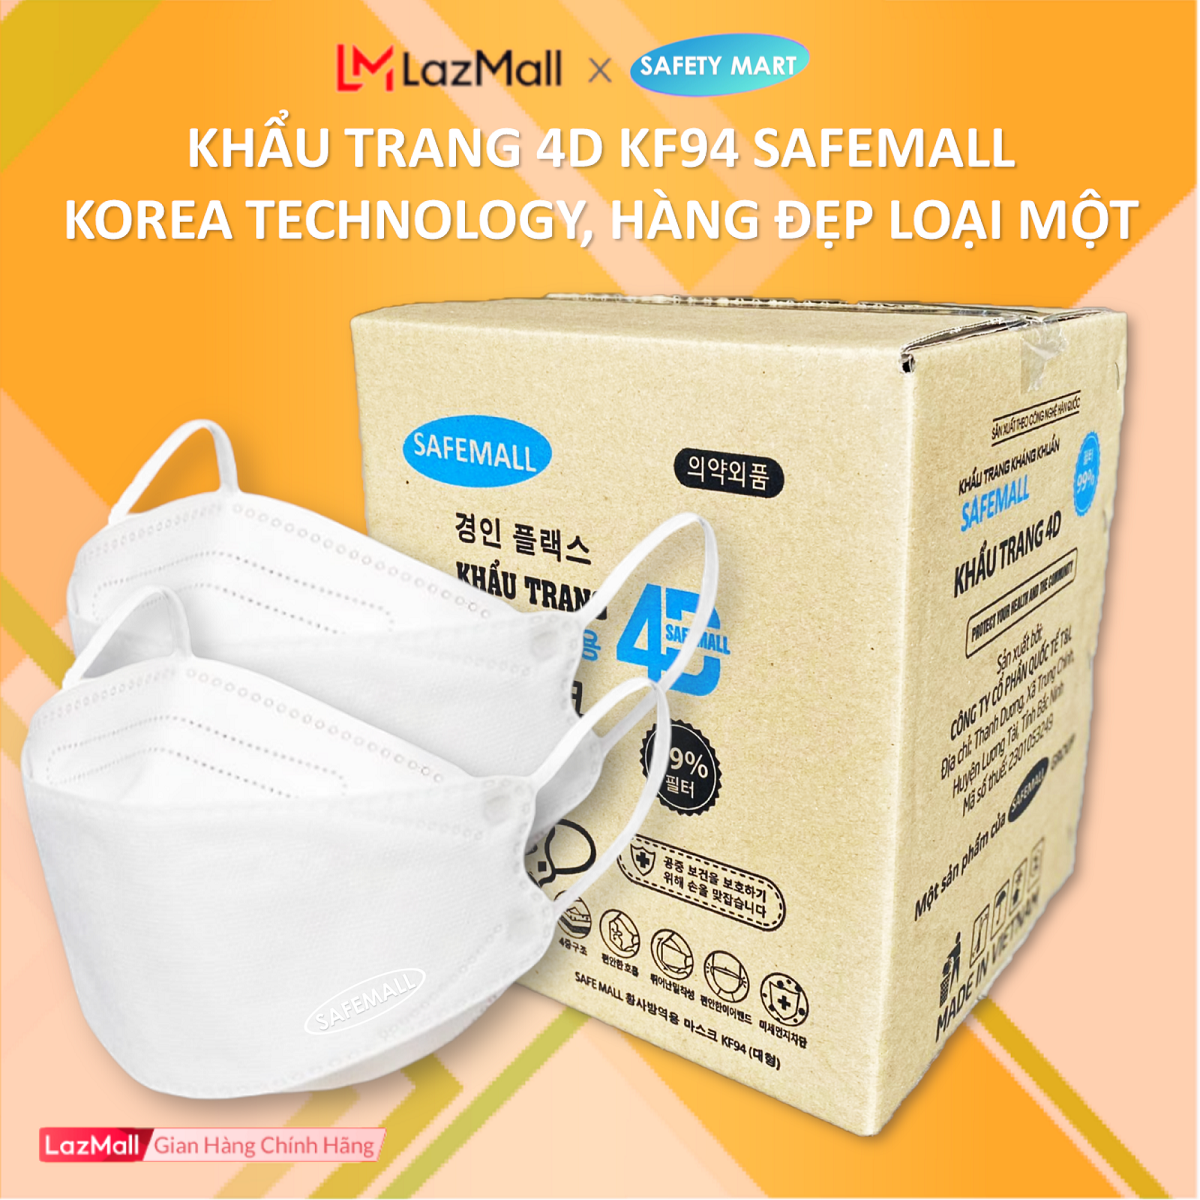 [HOT] Thùng 300 chiếc Khẩu trang y tế 4D KF94 SafeMall Công nghệ Hàn Quốc 4 lớp vải kháng khuẩn, kháng bụi mịn lên đến 95%, đạt tiêu chuẩn ISO - Hàng Chính Hãng Safety Mart Official